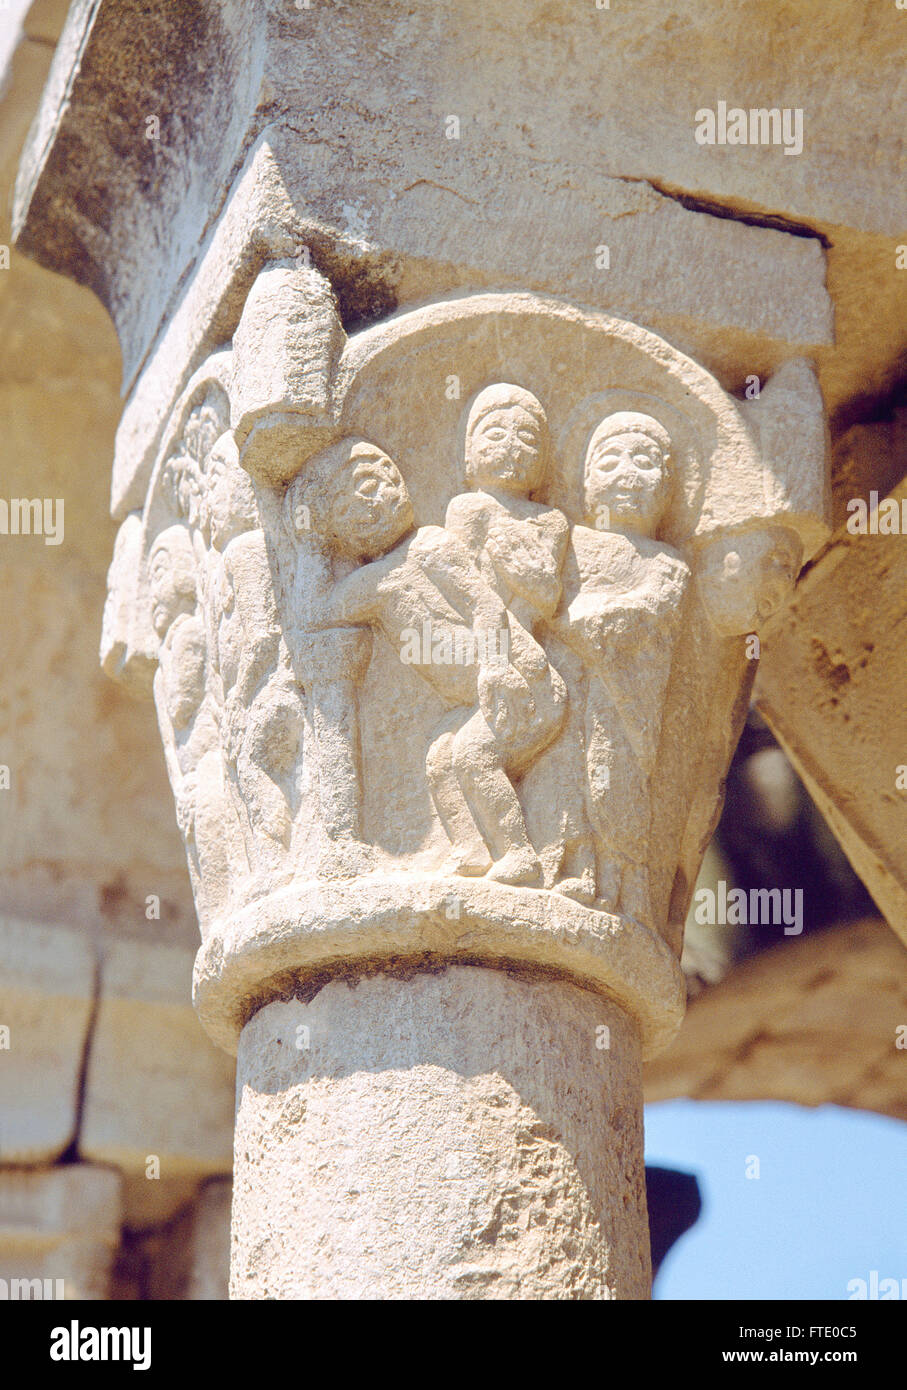 Dettaglio del capitello romanico. Chiostro di Sant Domenec monastero, Peralada, provincia di Gerona, Catalogna, Spagna. Foto Stock